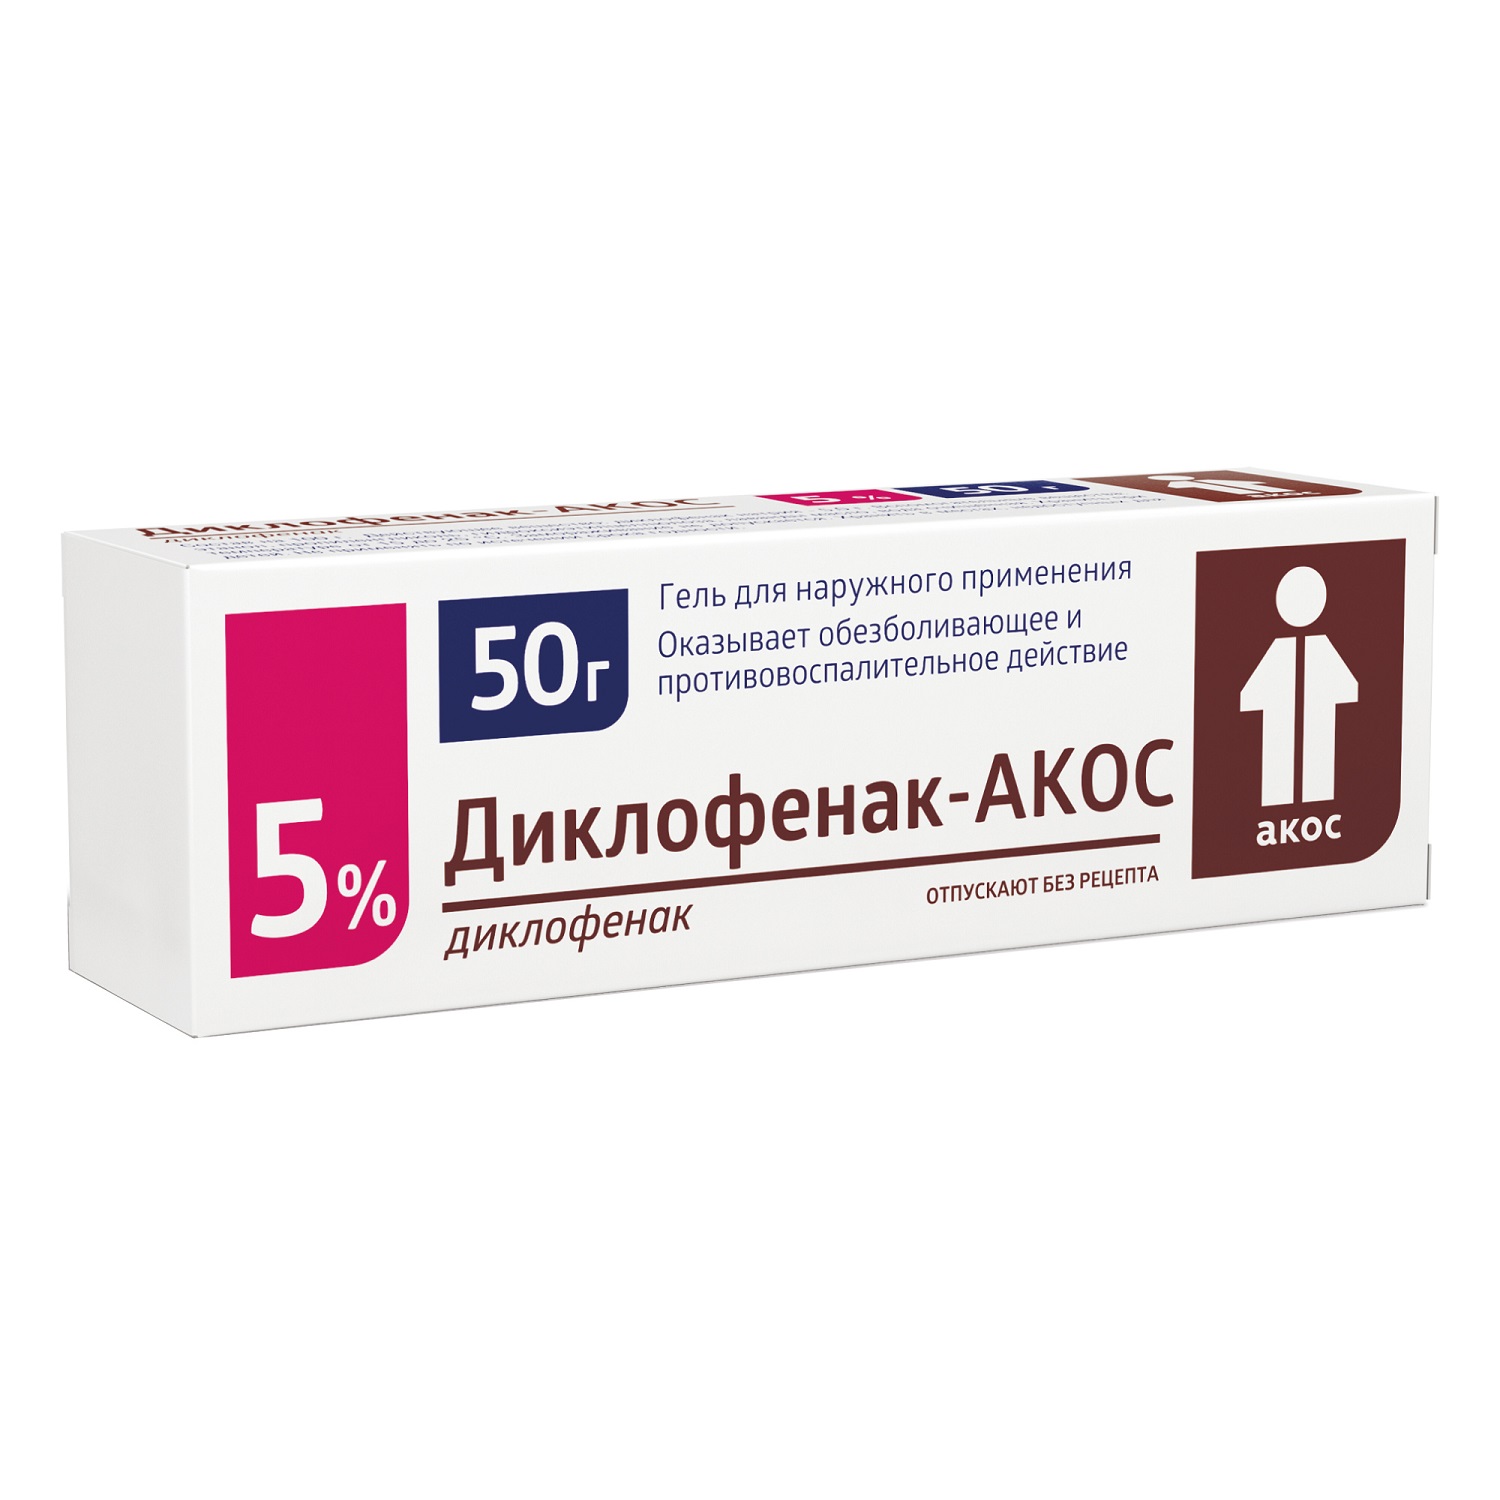 Диклофенак-Акос гель 5% 50г диклофенак гель для наружн примен 5% туб 50г